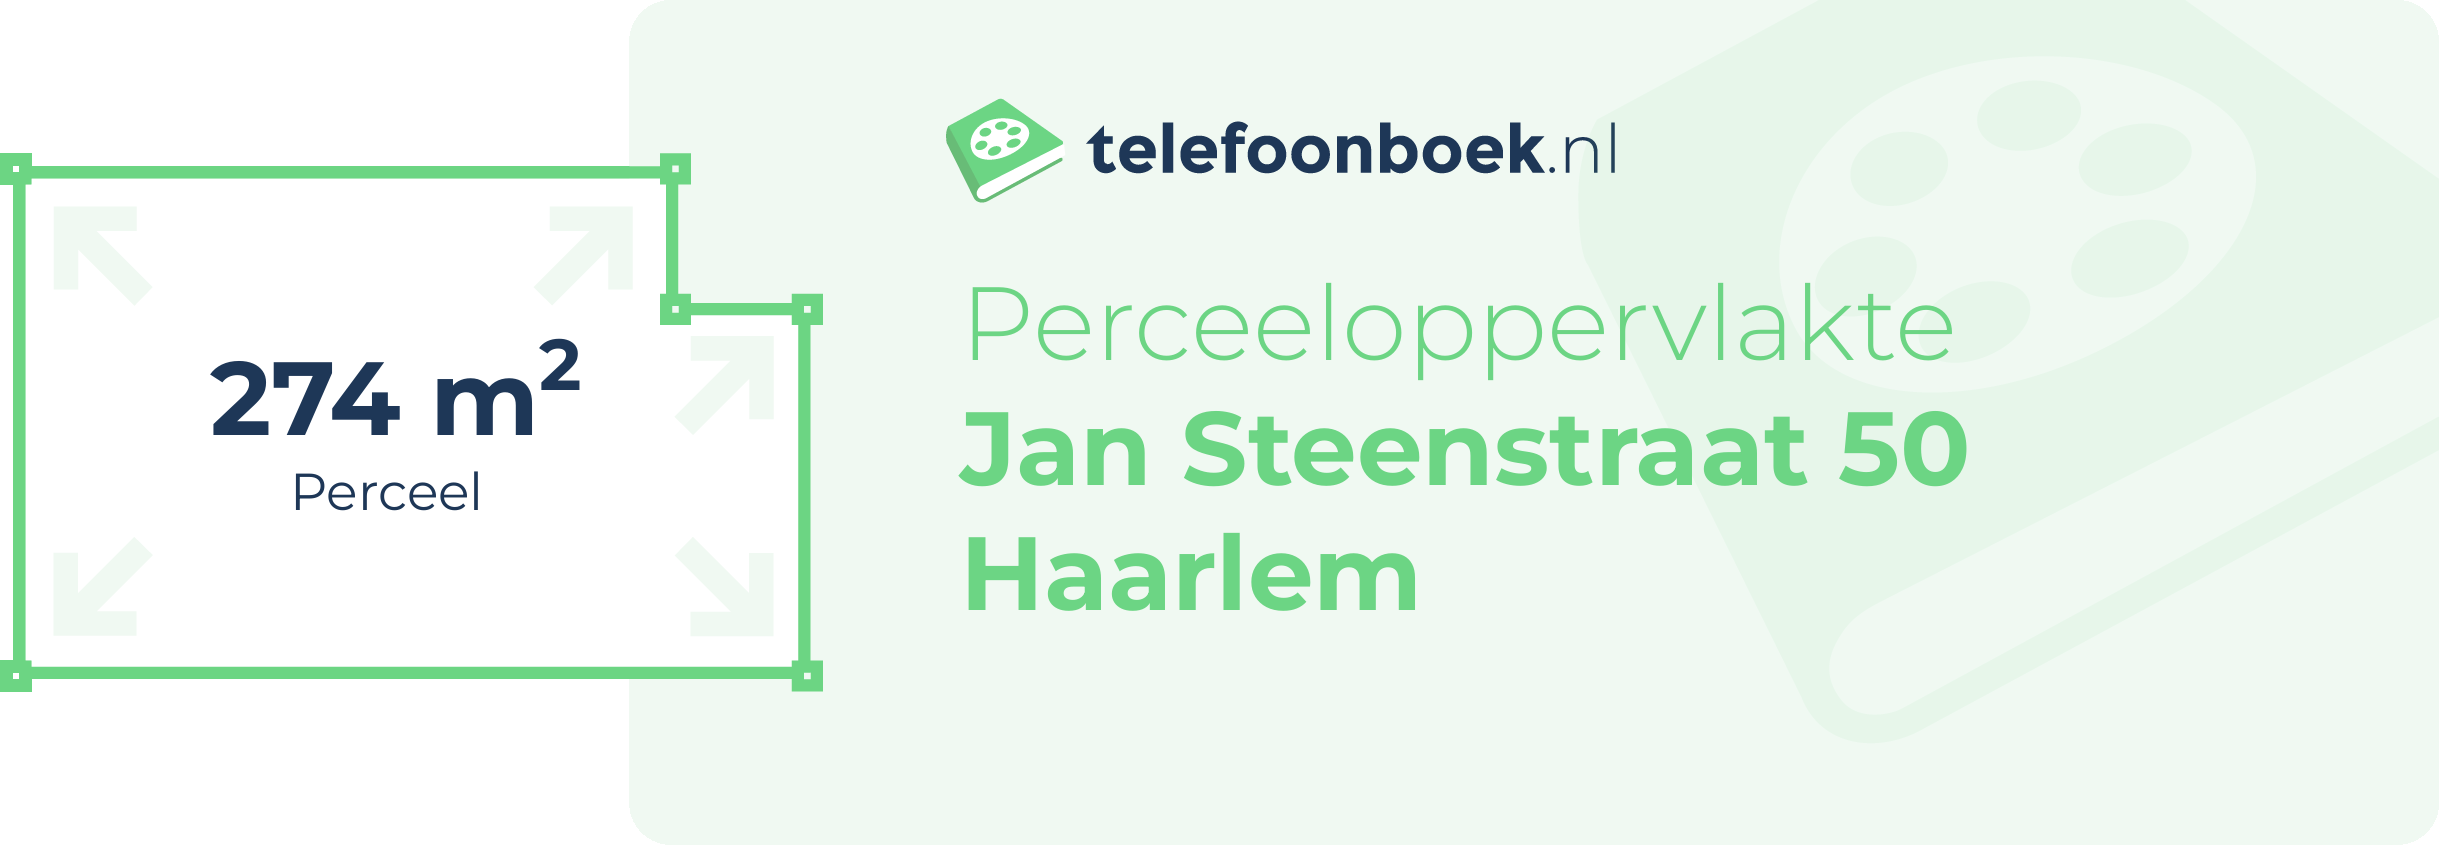 Perceeloppervlakte Jan Steenstraat 50 Haarlem